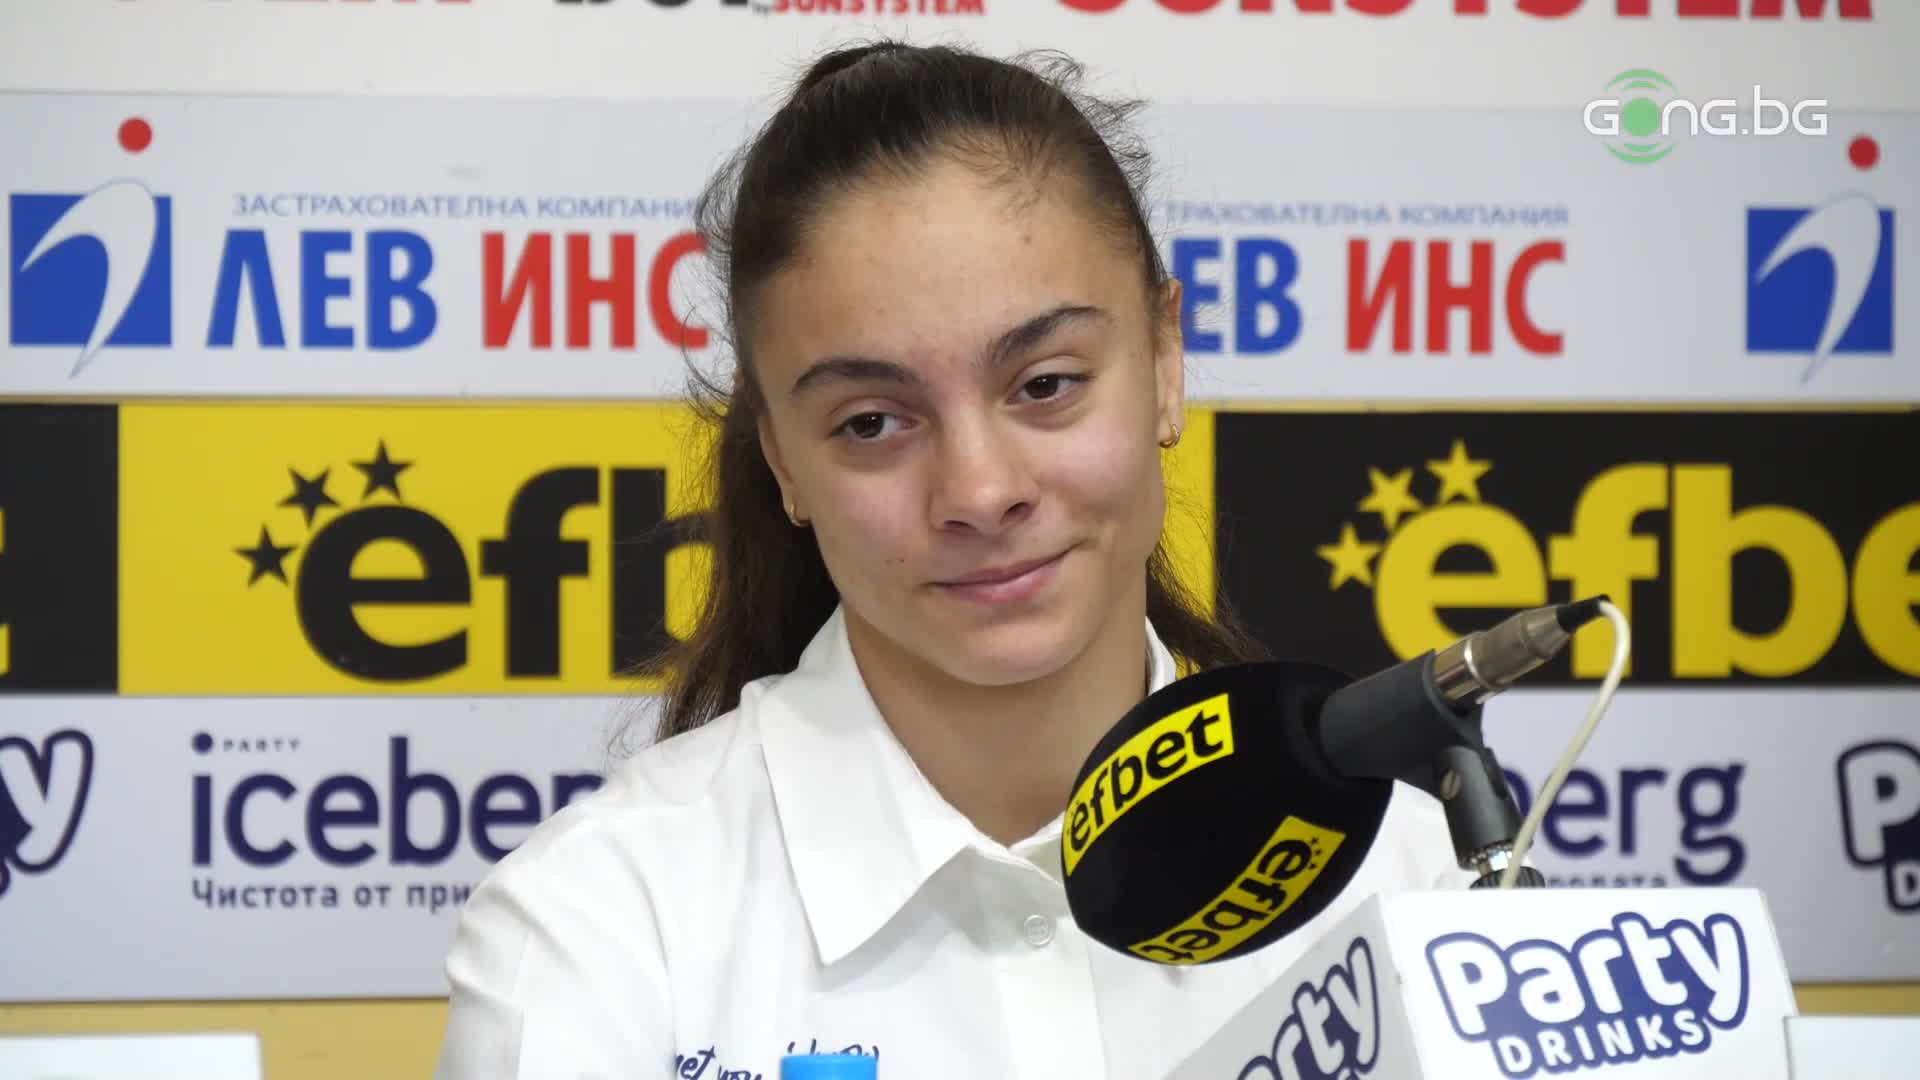 Валентина Георгиева: Целта ми е да взема медал от Олимпиадата